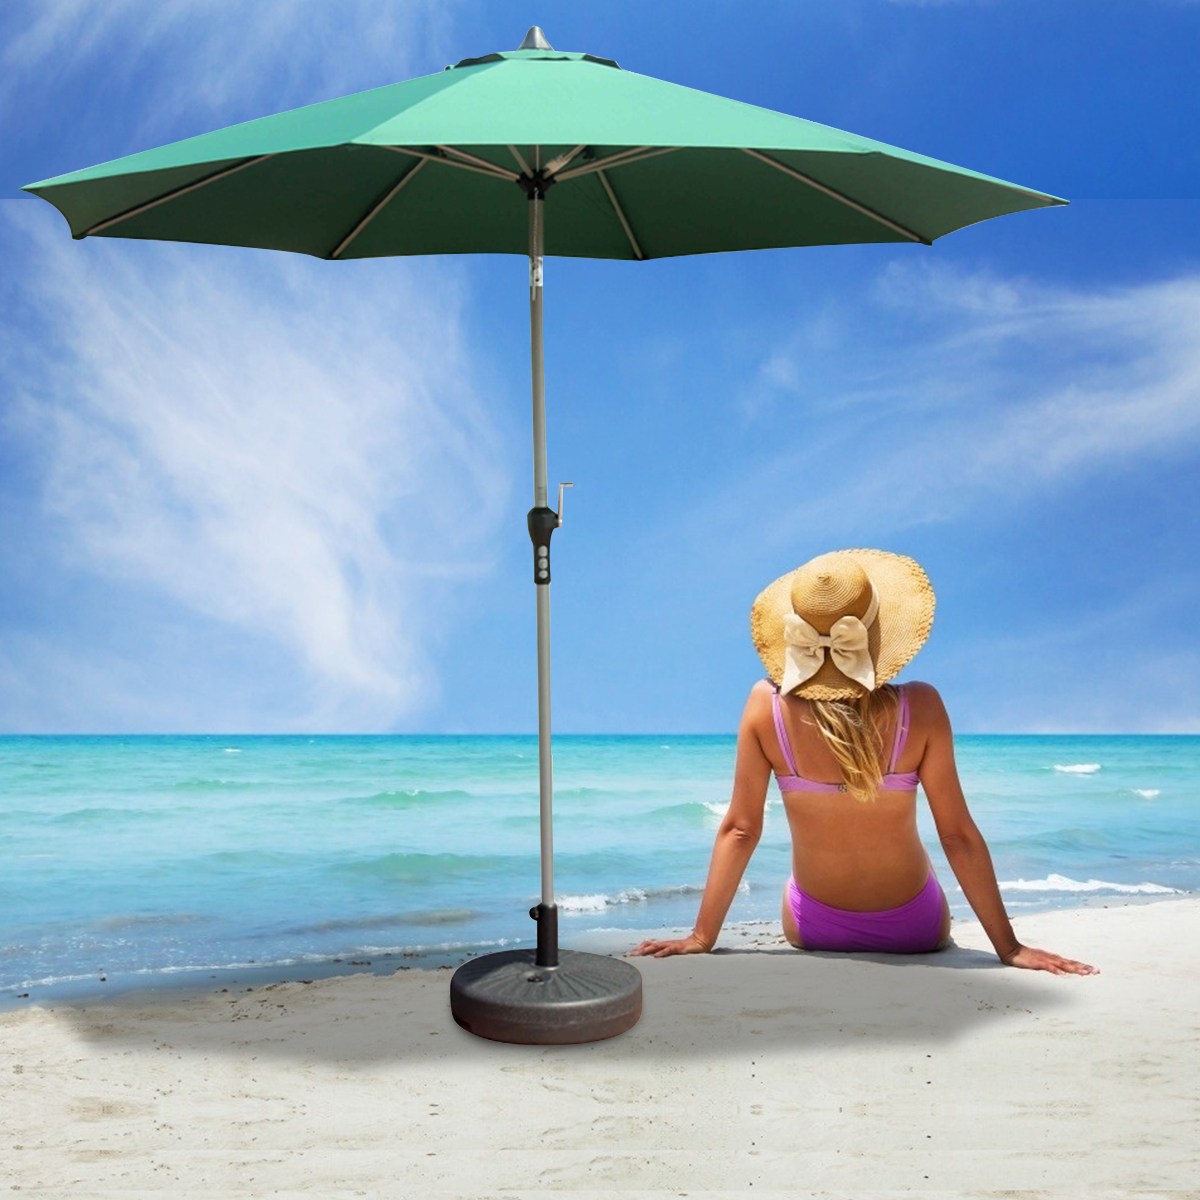 Umbrella-Base-Parasol-Stand-Holder-Cantilever-Patio-Sun-Beach-Outdoor-Garden-1749132